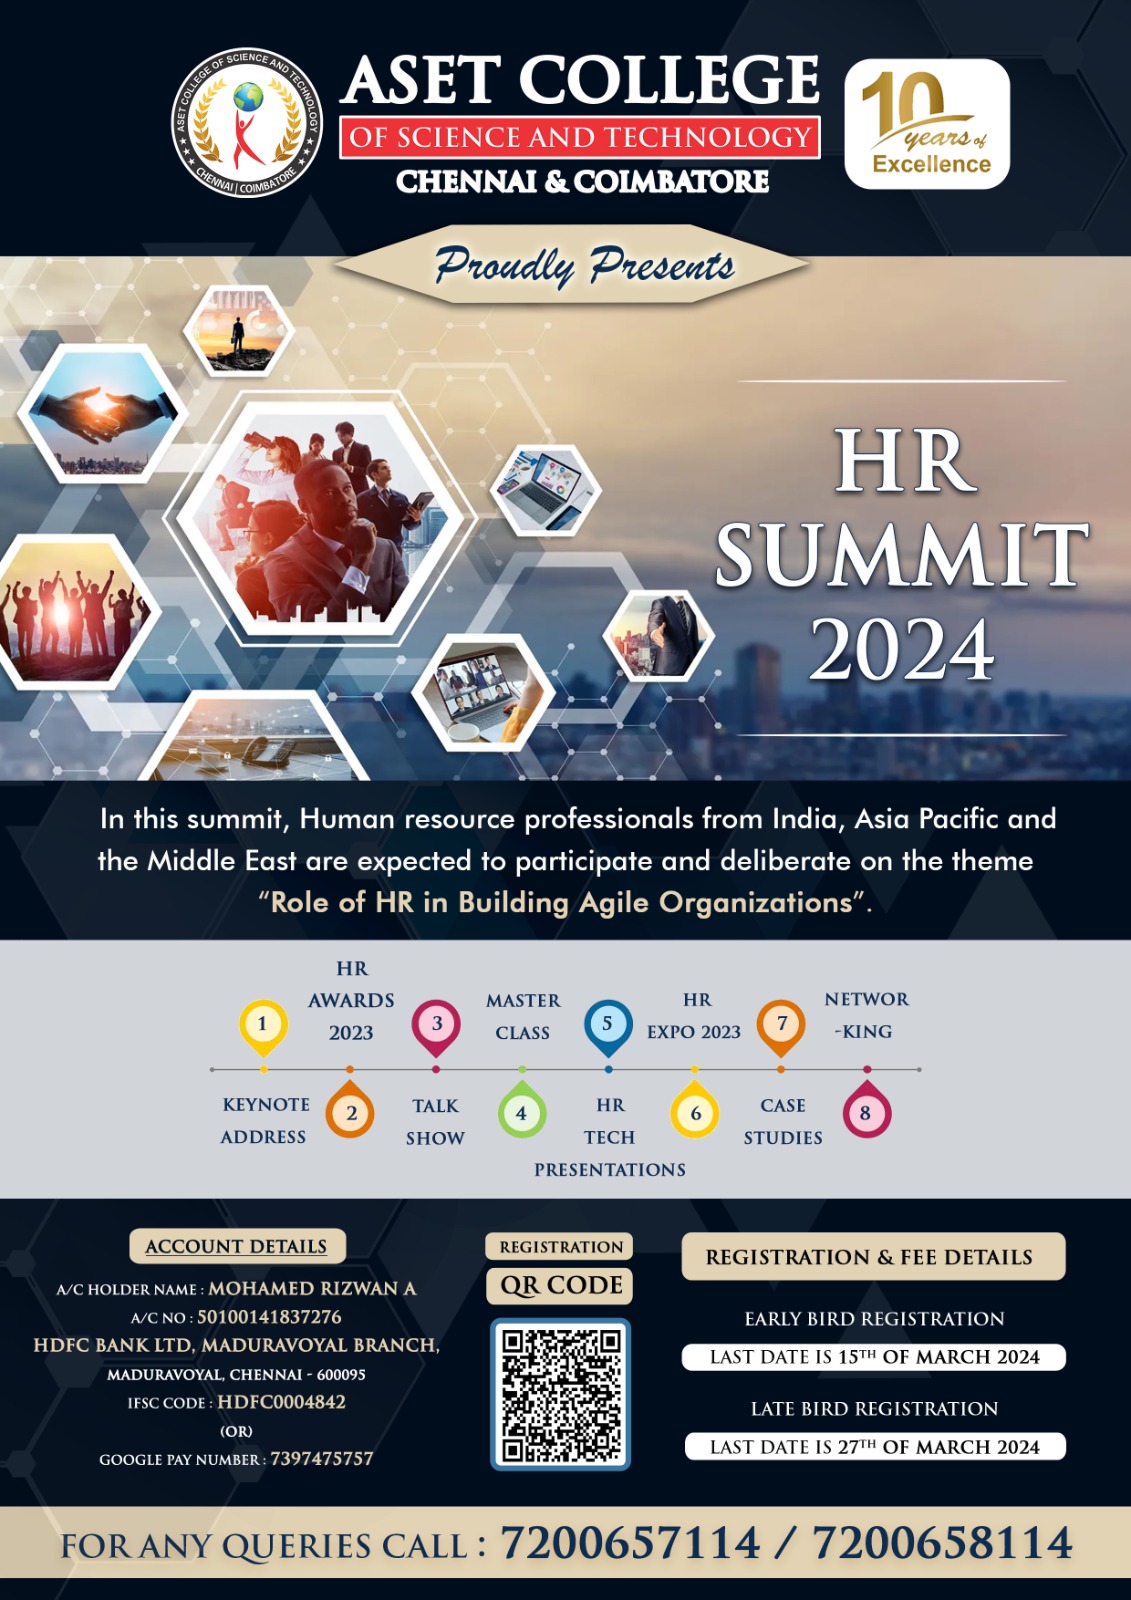 HR SUMMIT 2024